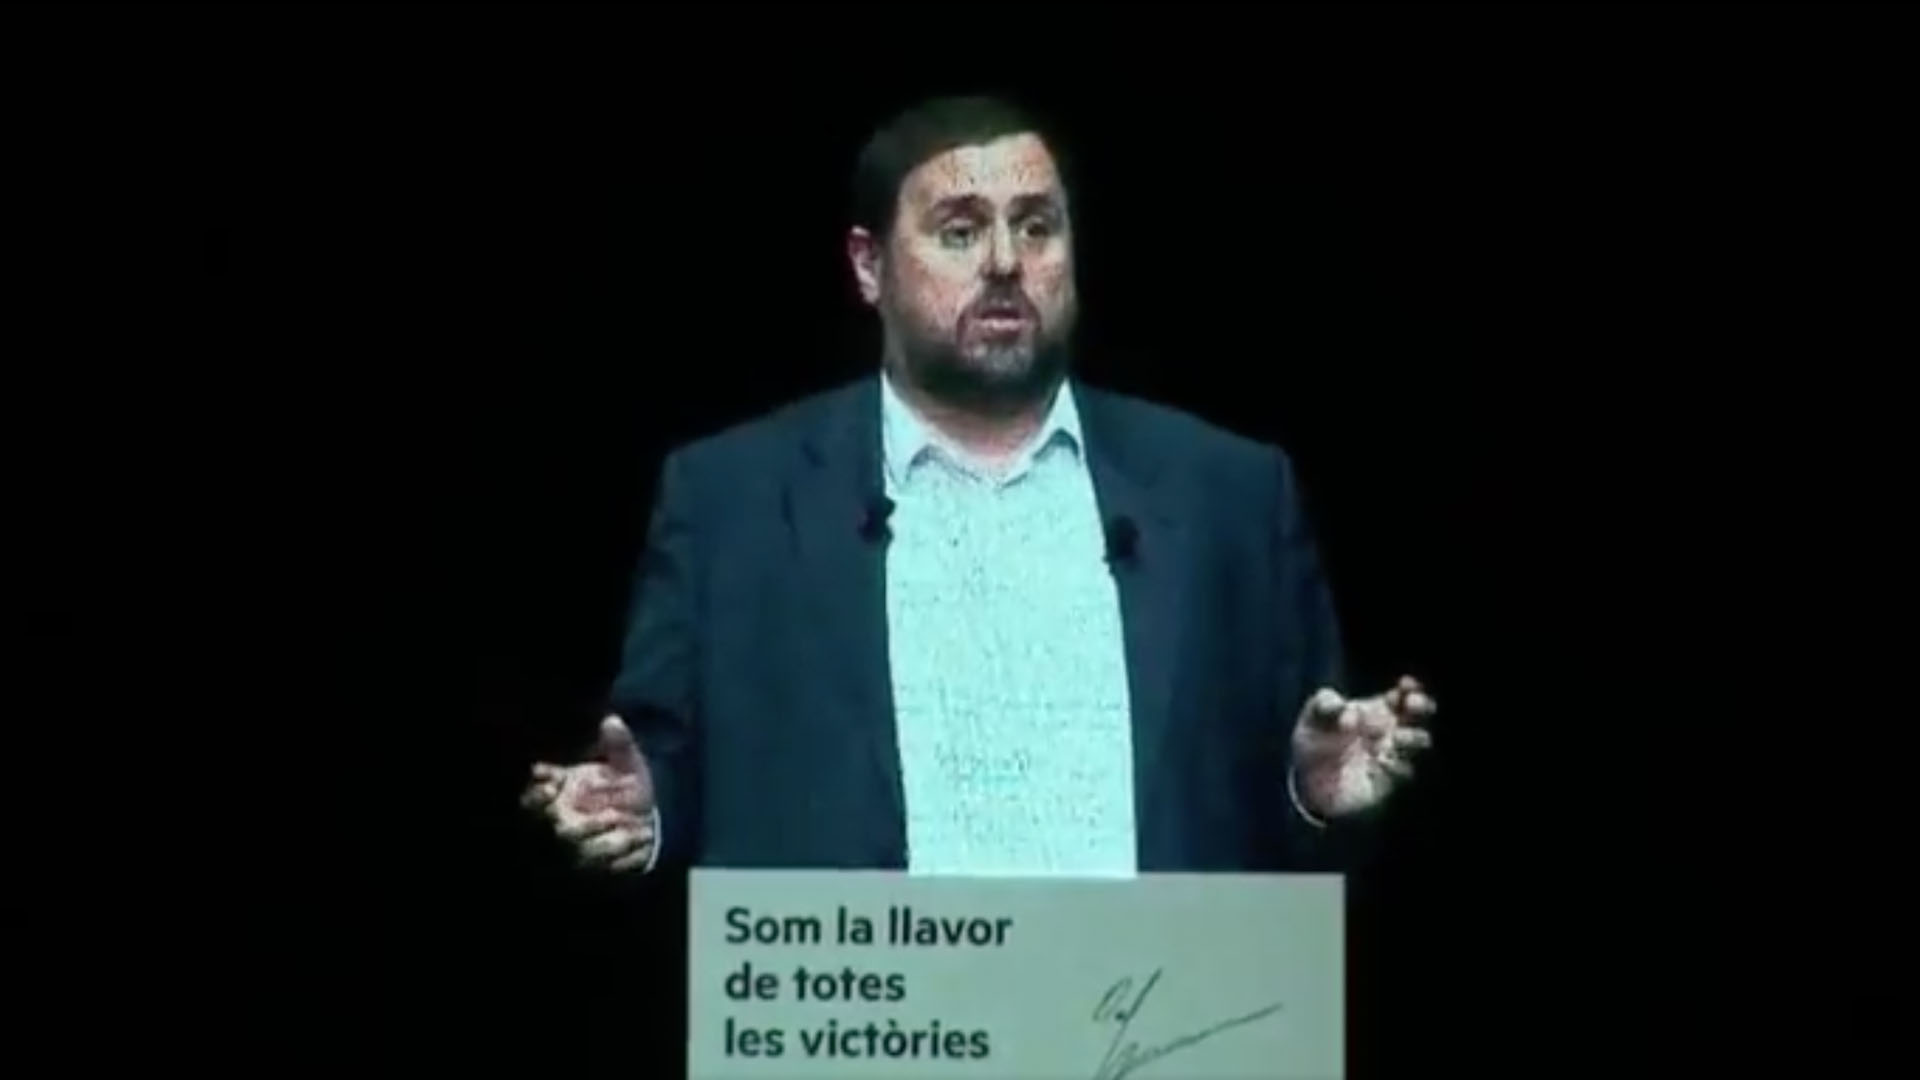 Oriol Junqueras aparece en un acto de ERC en forma de holograma: "La represión no frenará la libertad de Cataluña"